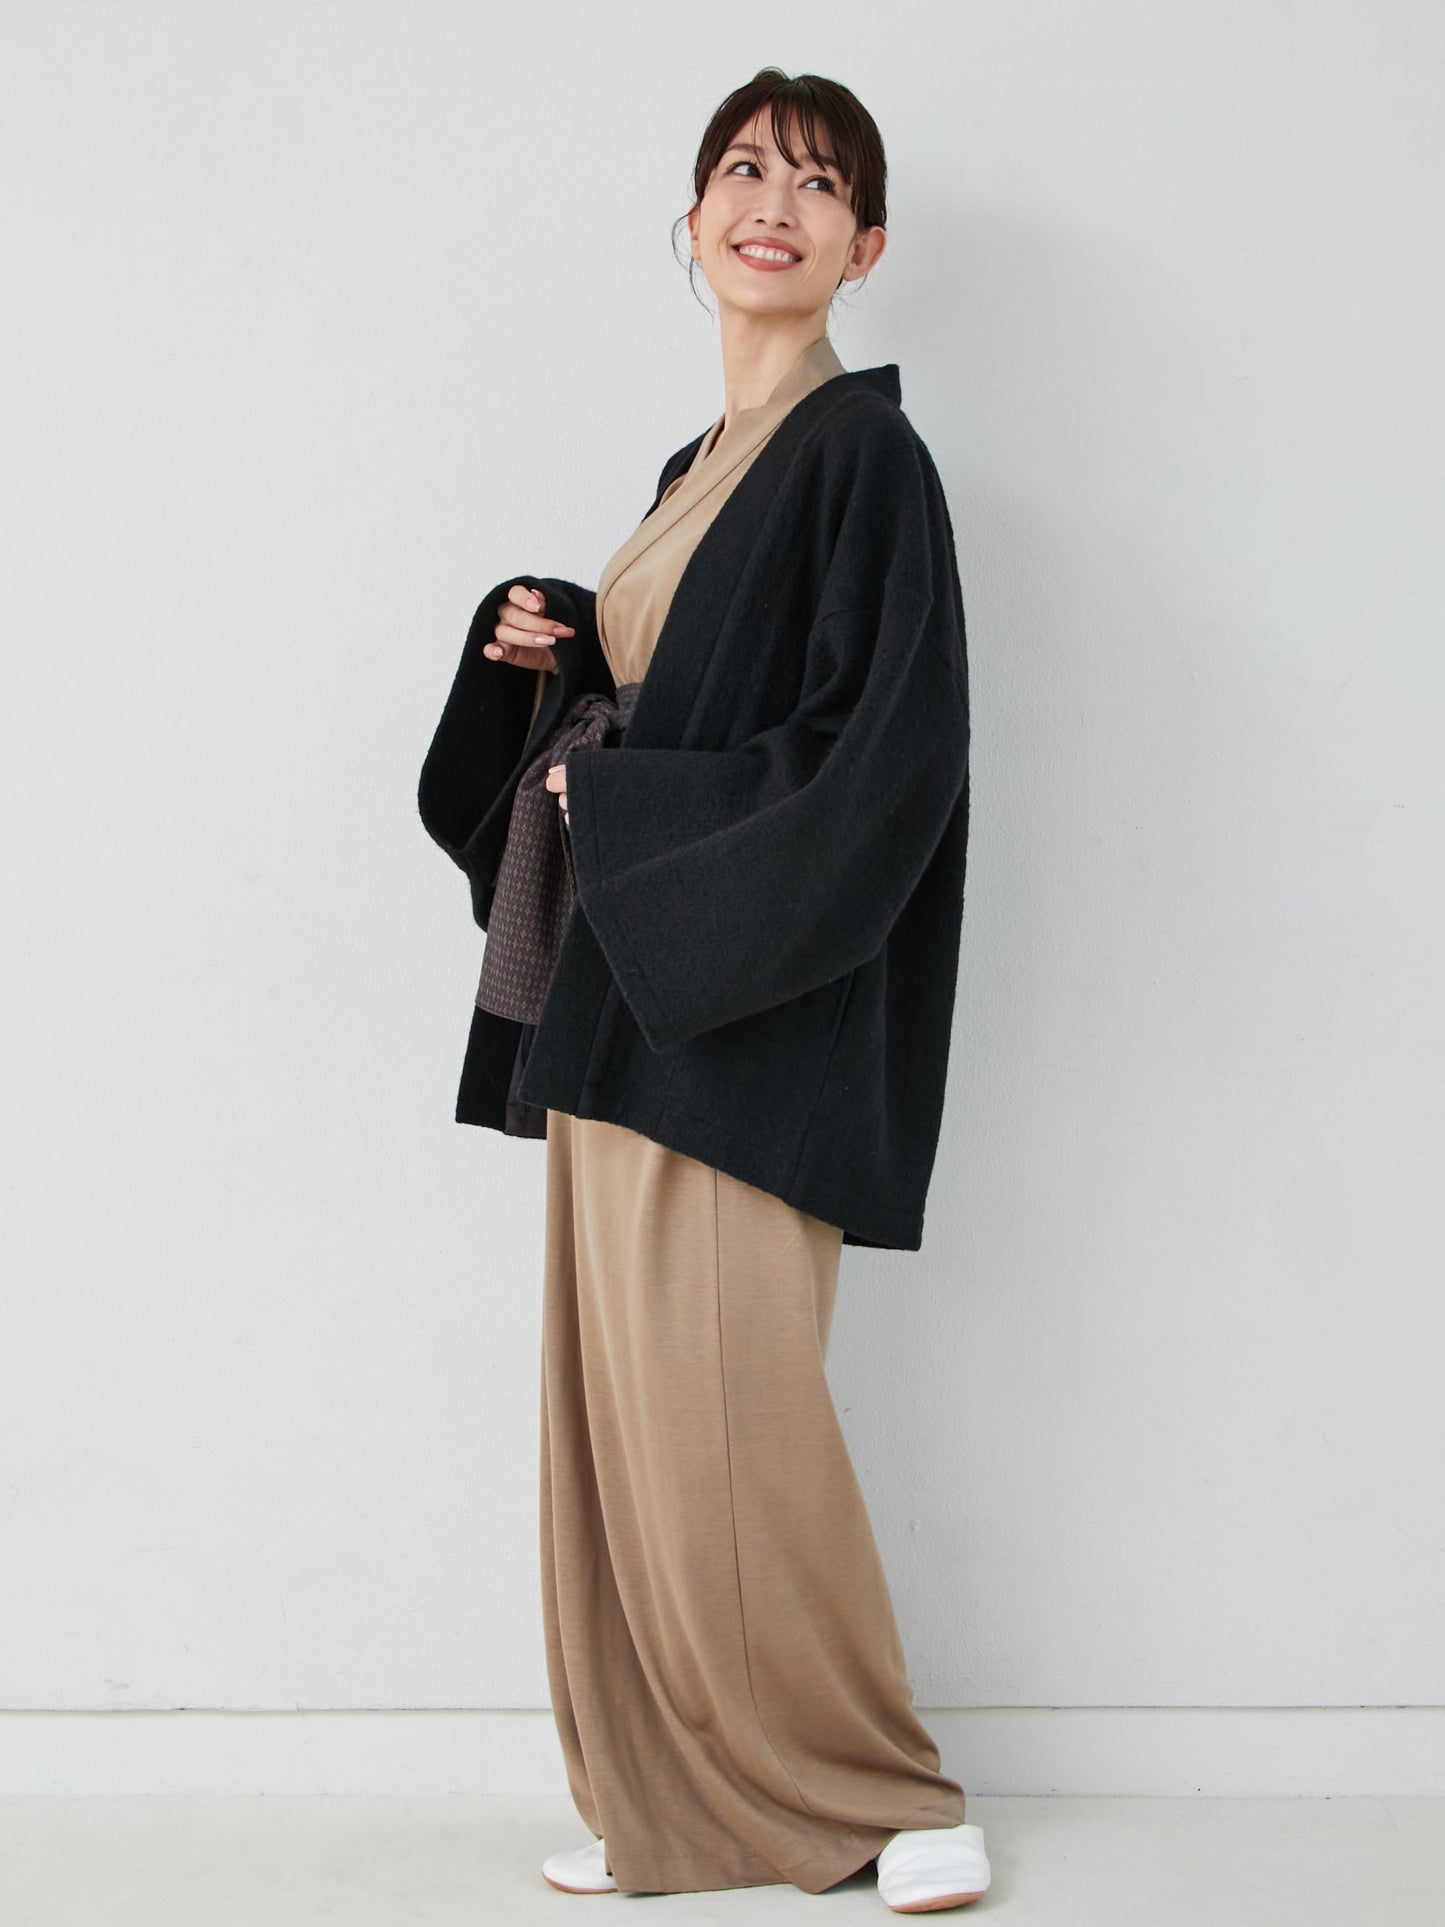 
                  
                    羽織ガウン・プレミアム（ウール）-ブラック- Haori Gown Premium(Wool)-Black- - Nanafu｜YUKATA Roomwear
                  
                